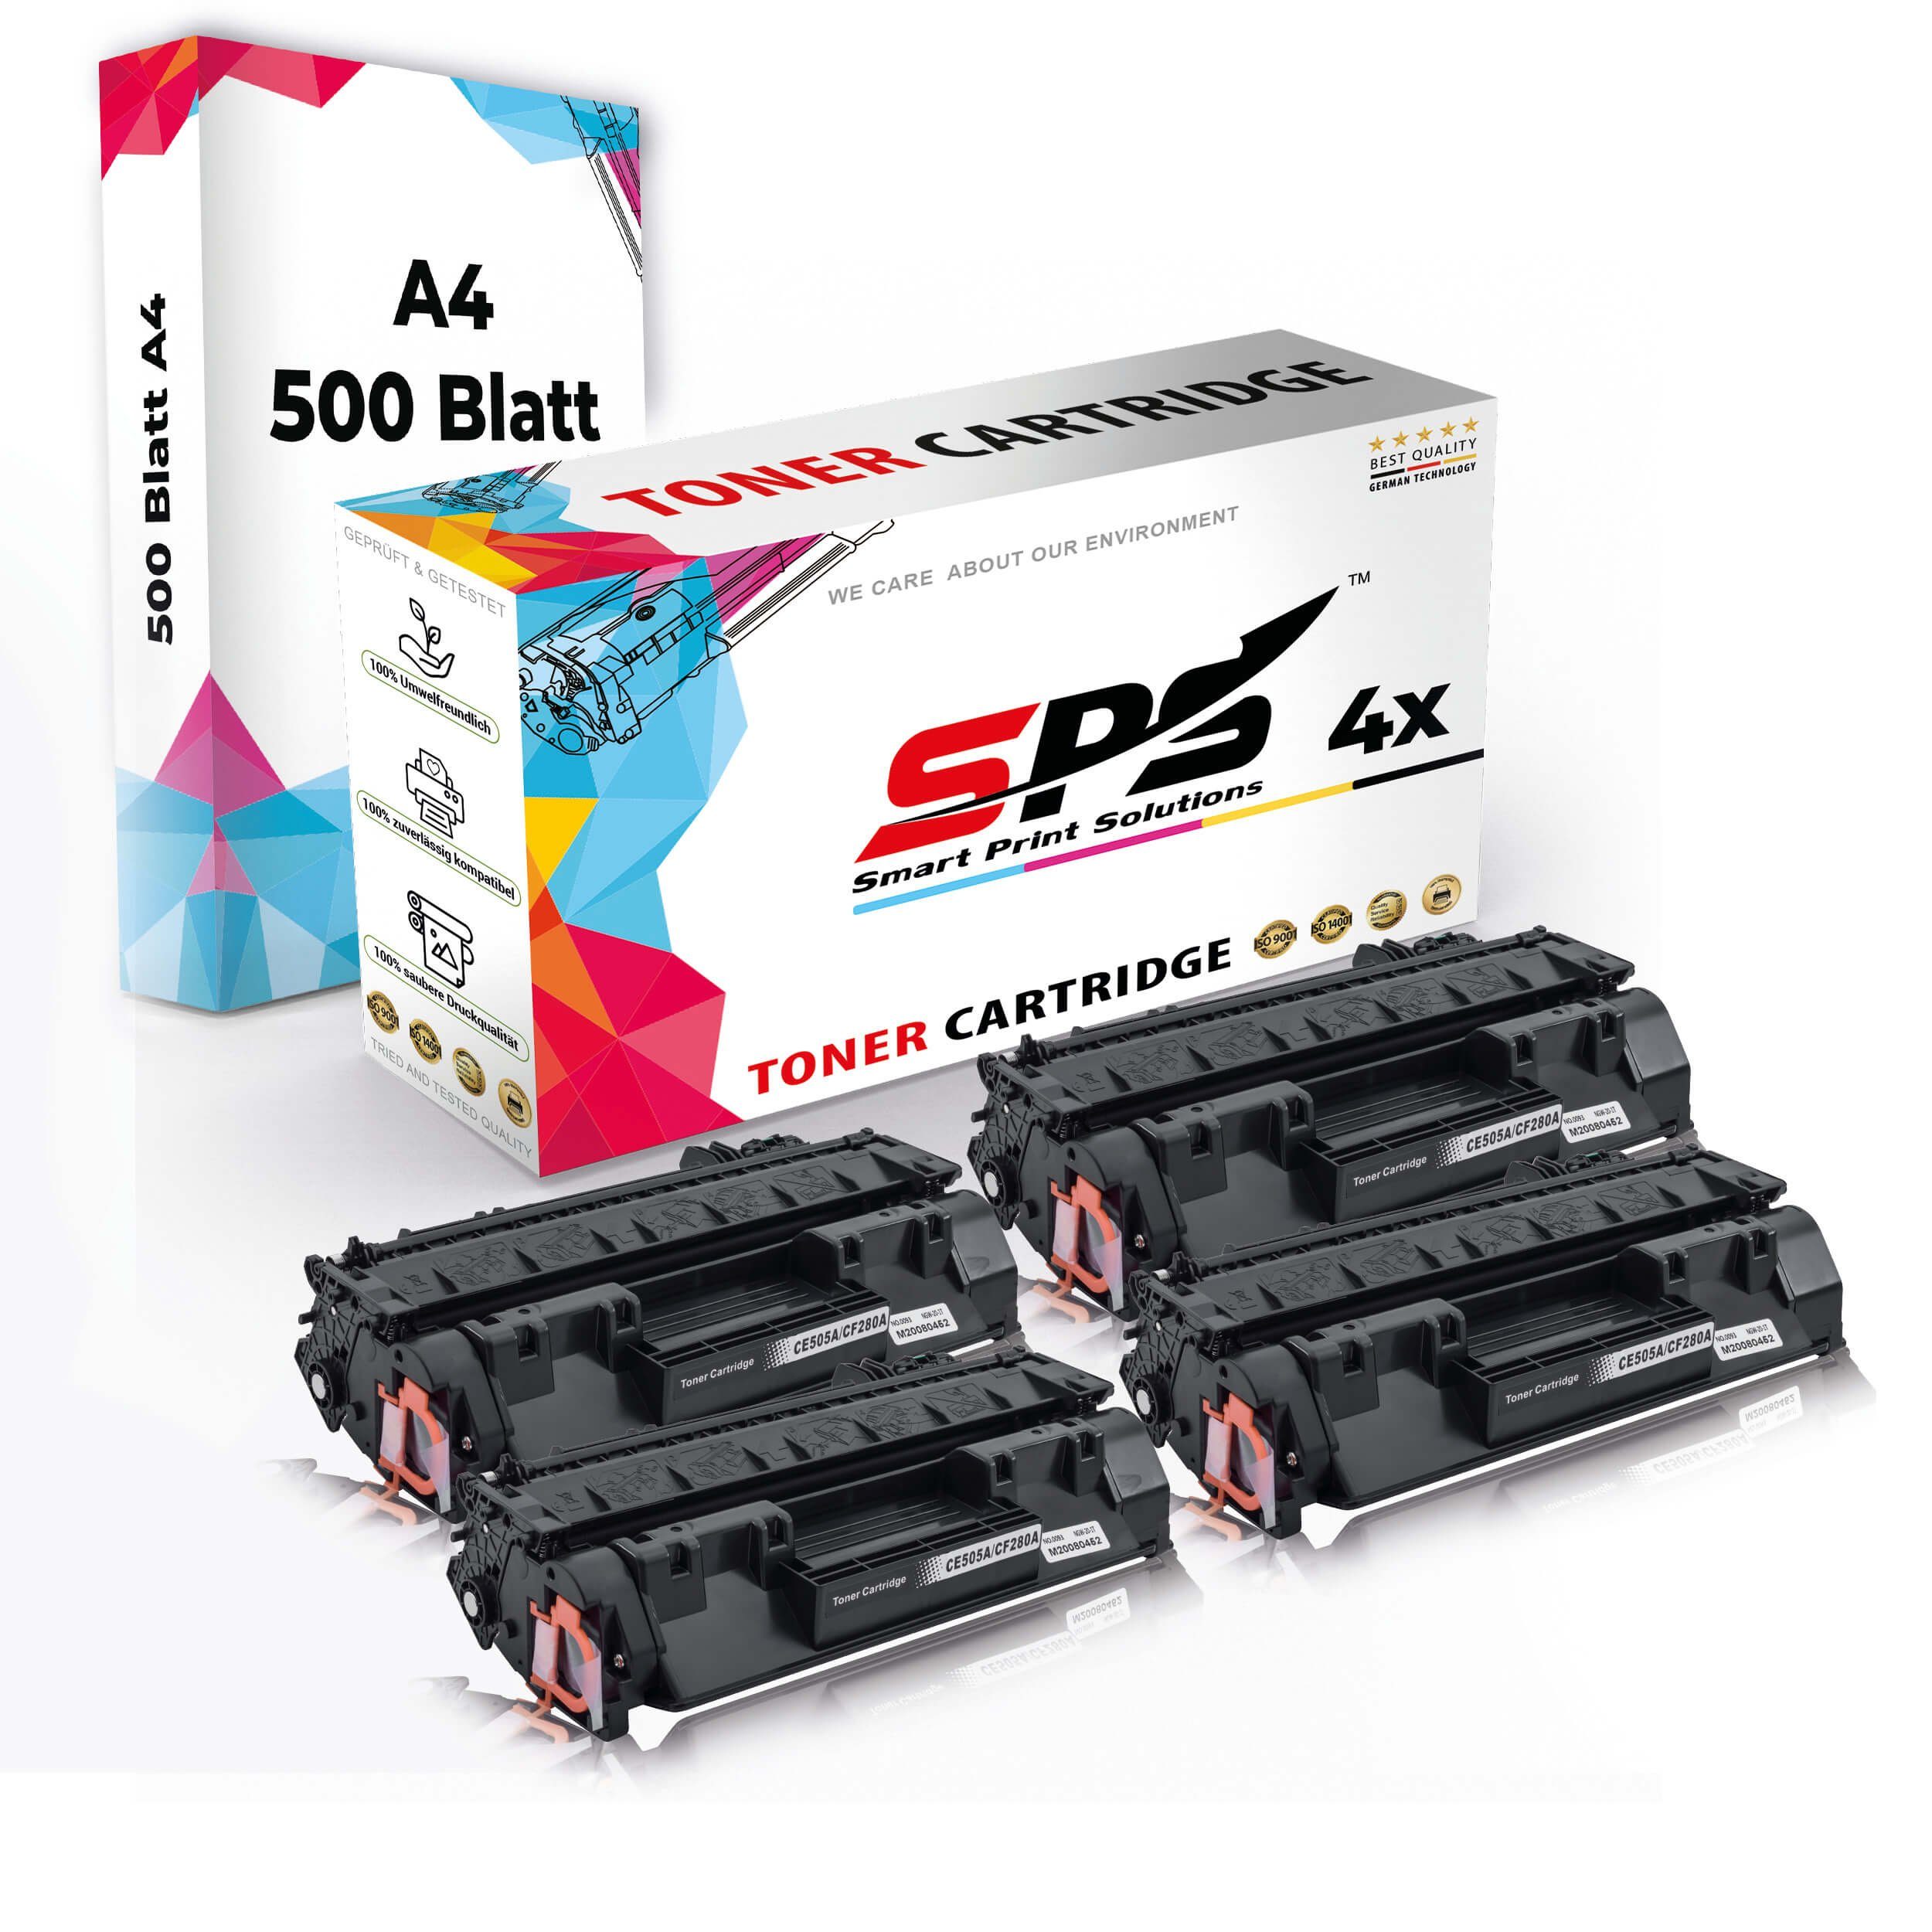 4x + A4 SPS Druckerpapier) Druckerpapier (4er Set Kompatibel, A4 4x Multipack Toner,1x Tonerkartusche Pack,